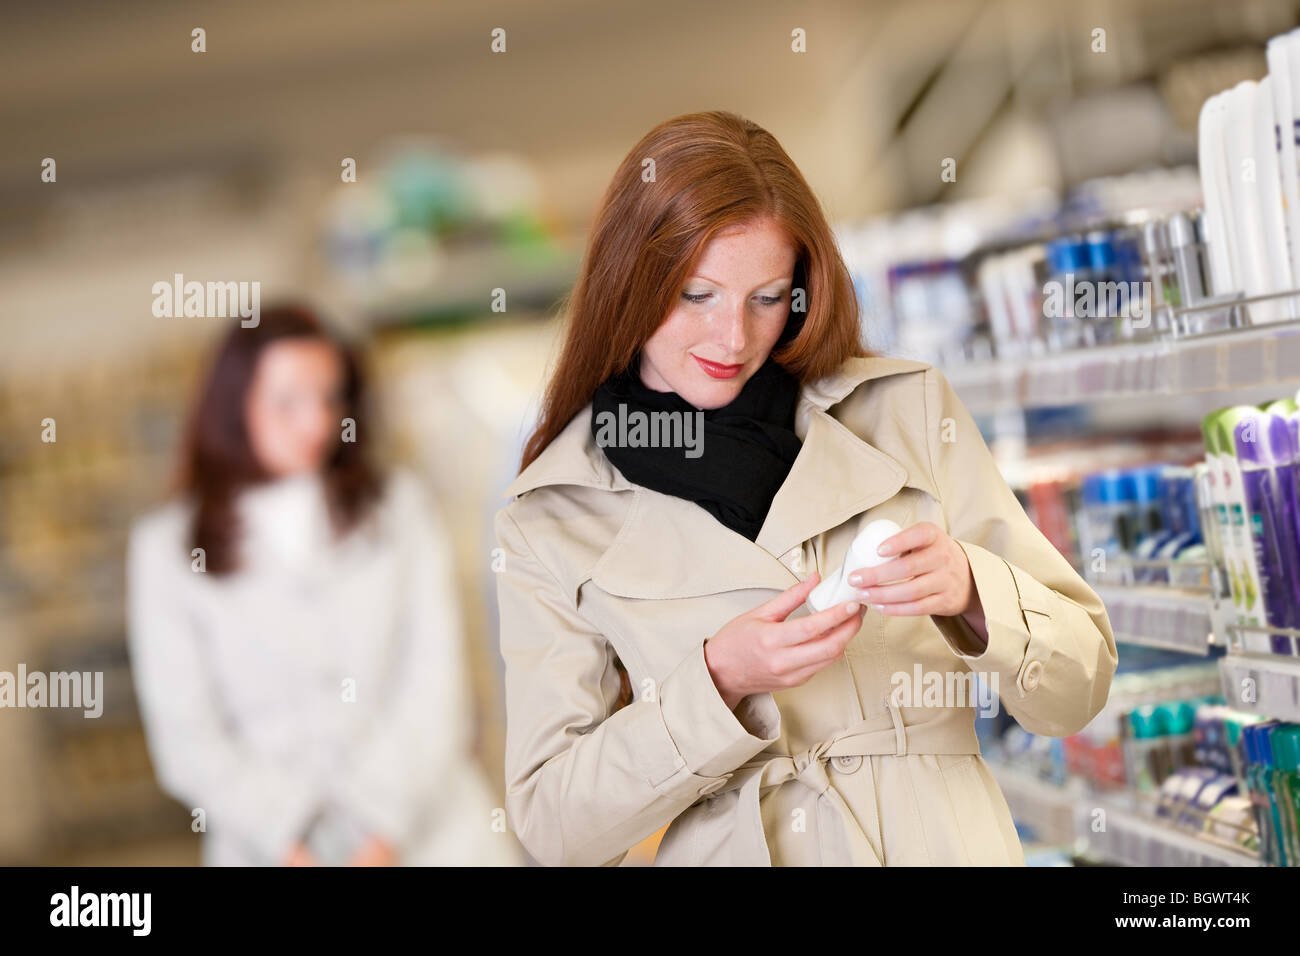 Shopping - capelli rossi donna deodorante di acquisto in un reparto cosmetico Foto Stock